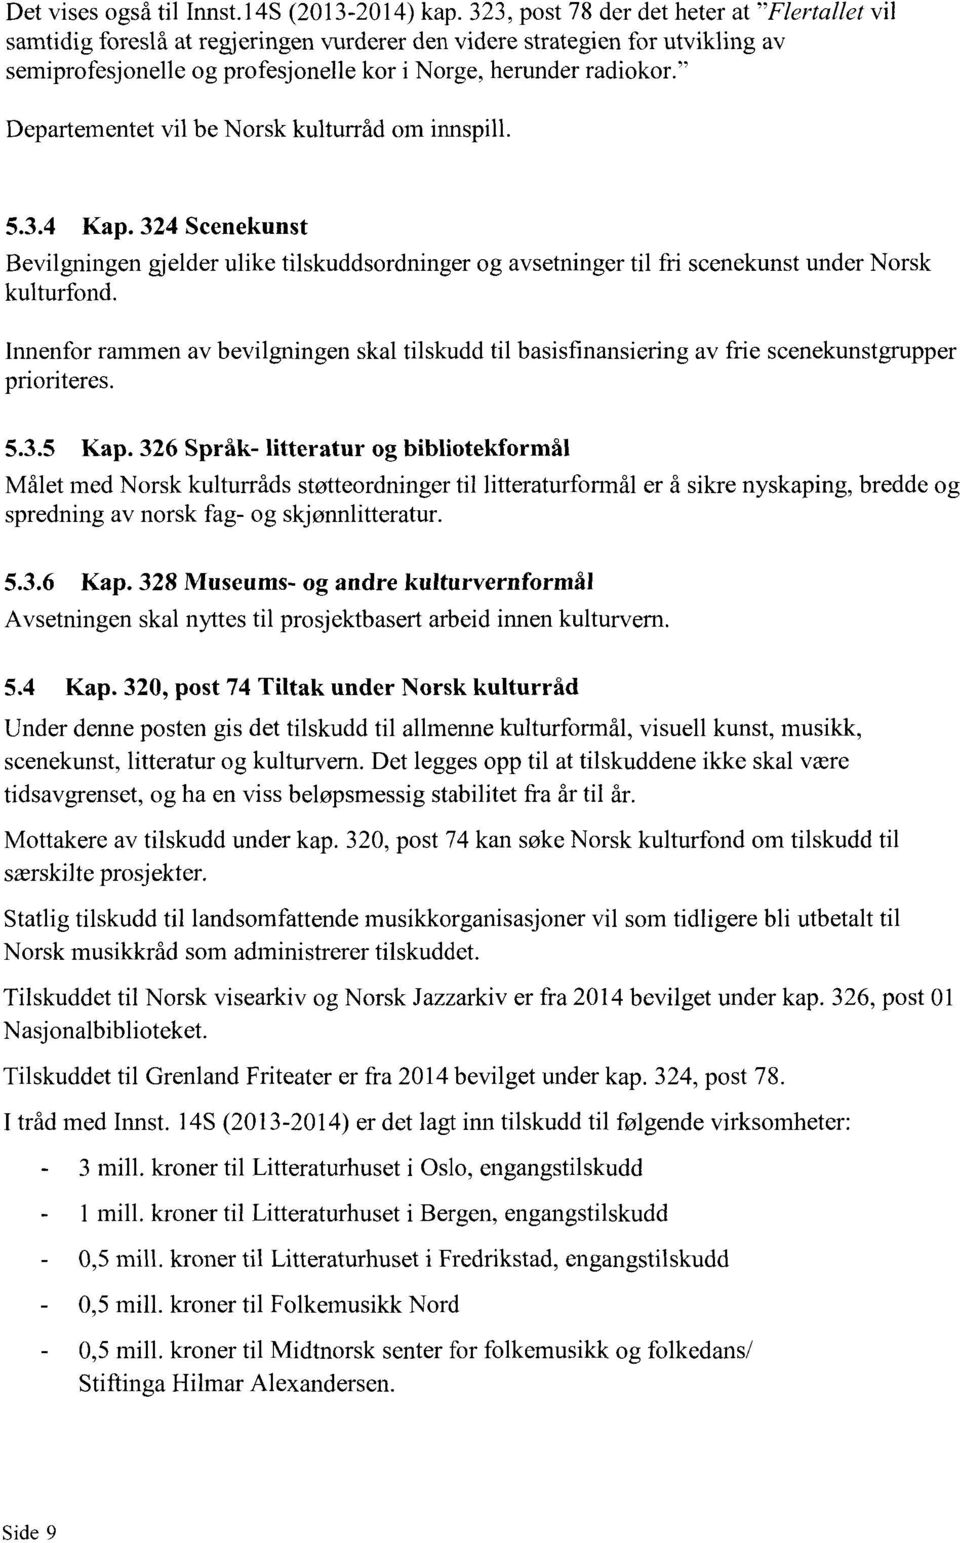 " Departementet vil be Norsk kulturråd om innspill. 5.3.4 Kap. 324 Scenekunst Bevilgningen gjelder ulike tilskuddsordninger og avsetninger til fri scenekunst under Norsk kulturfond.